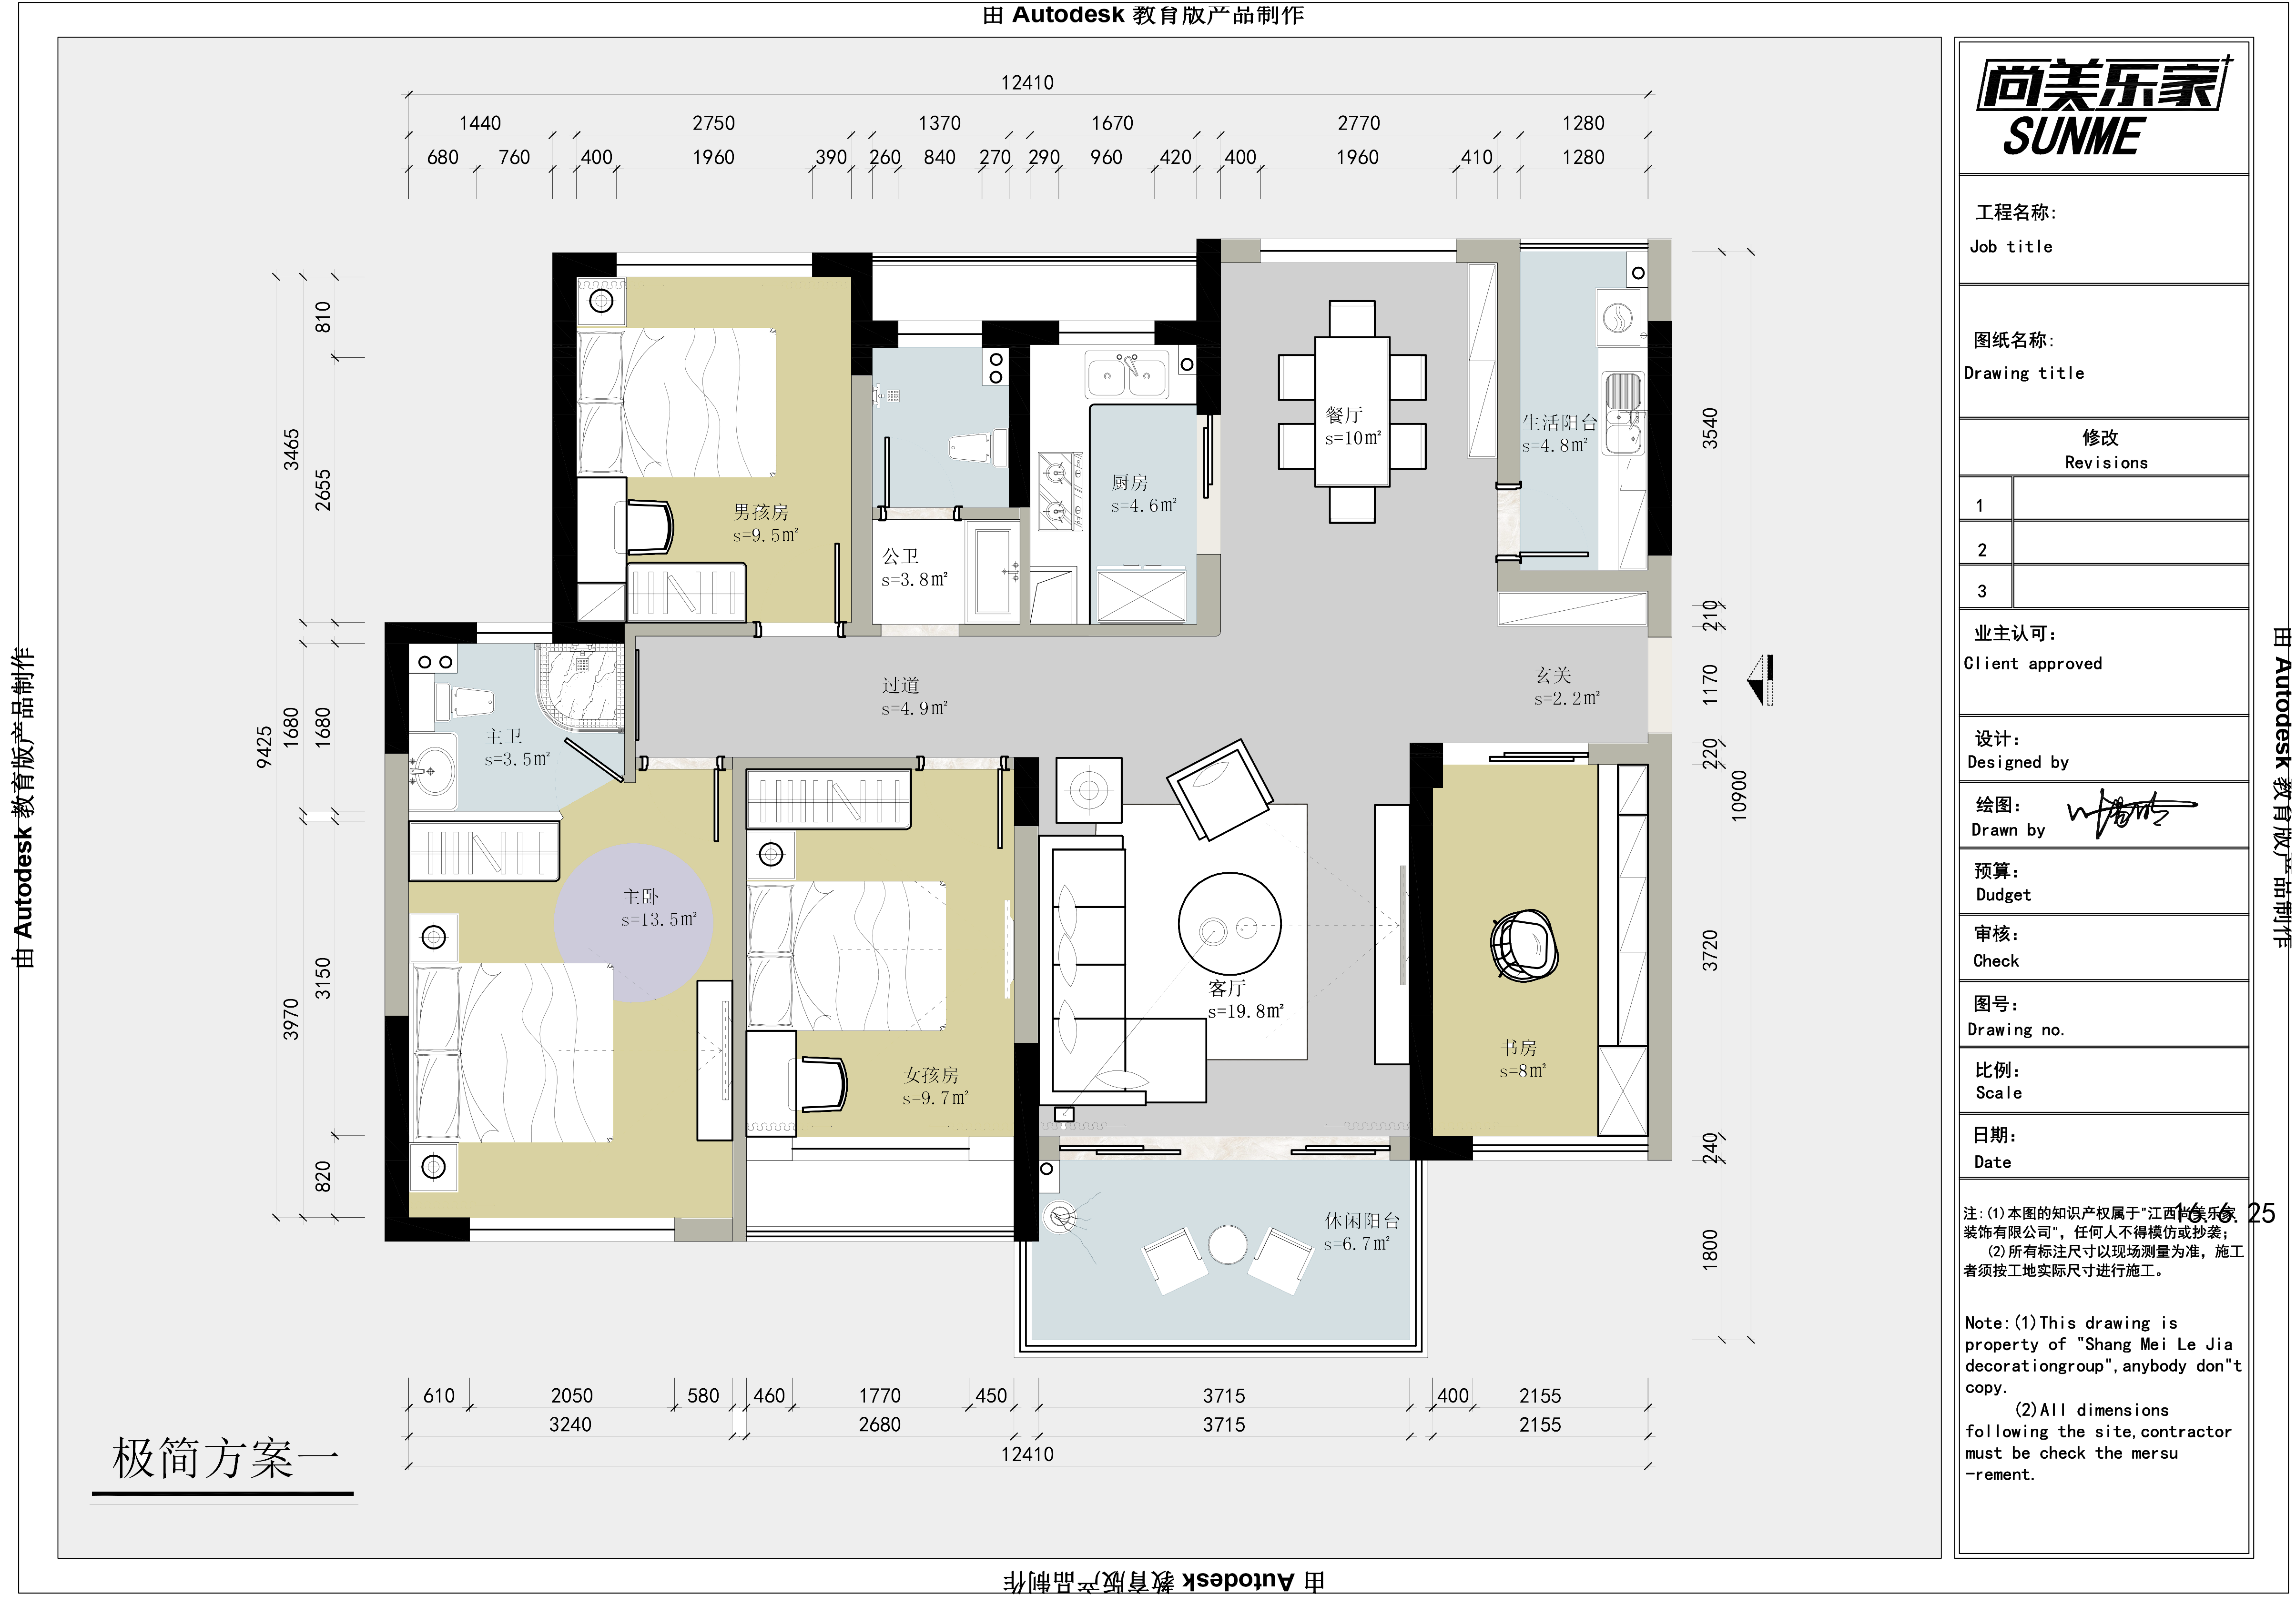 【户型优化第5期】127平三室两厅+钢琴区- 大作